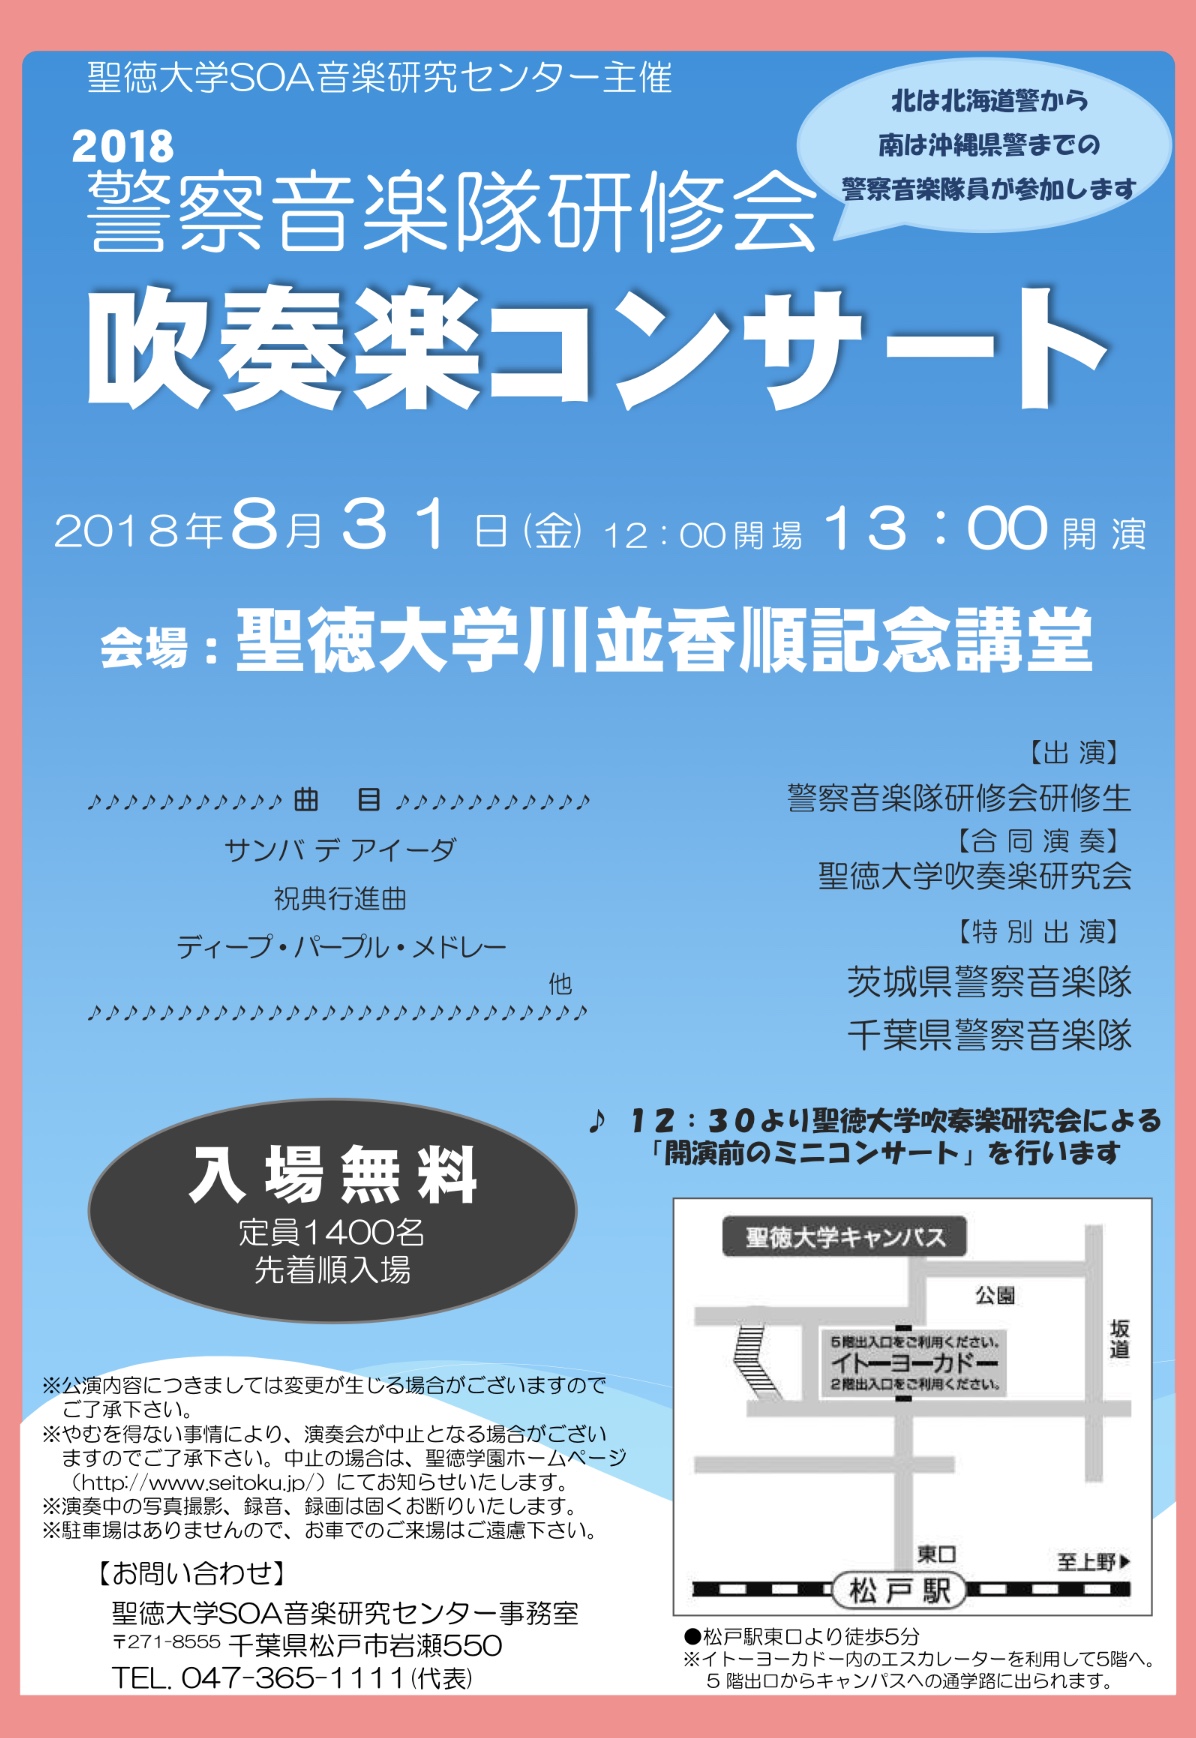 8月31日(金)「2018警察音楽隊研修会 吹奏楽コンサート」が開催されます